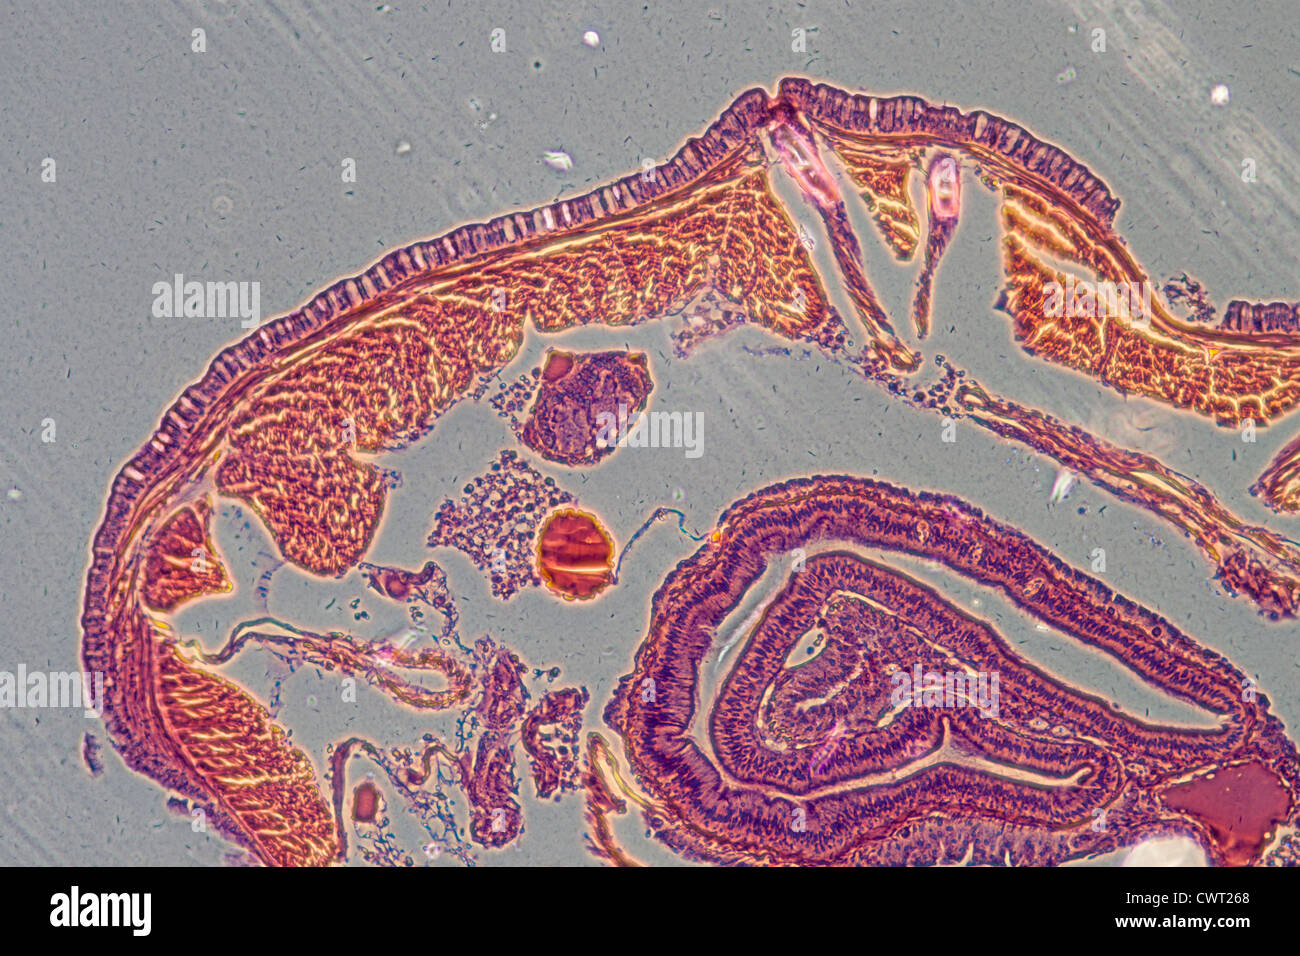 Wissenschaft-Mikroskopie Schliffbild Regenwurm oder modular Stockfoto